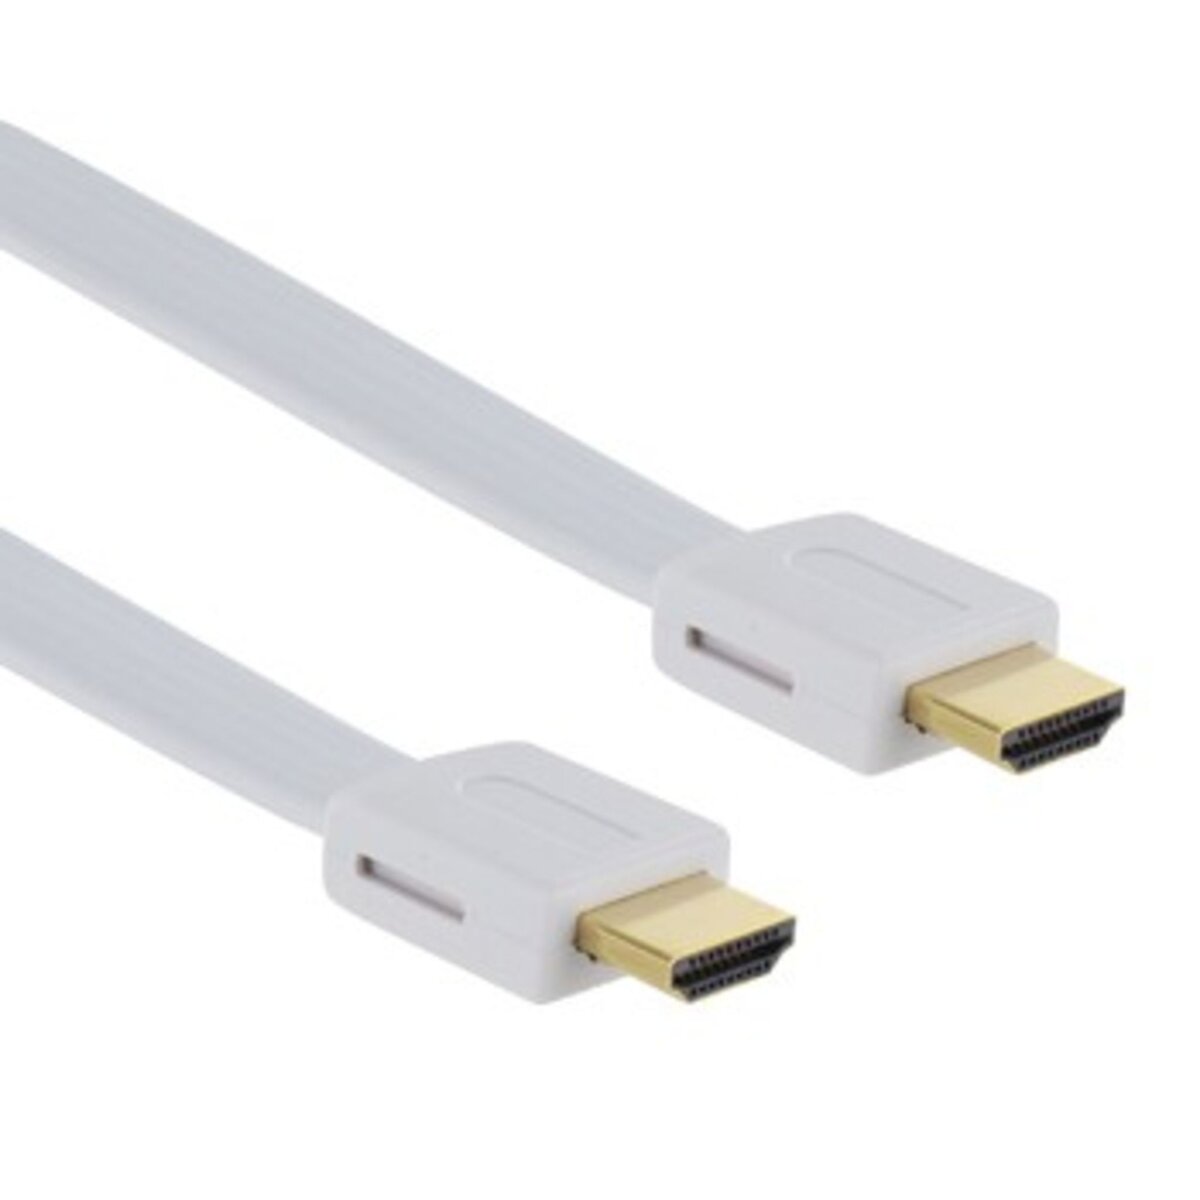 THOMSON Connectique Video Câble HDMI Haute Vitesse Ethernet 1,5 Mètres